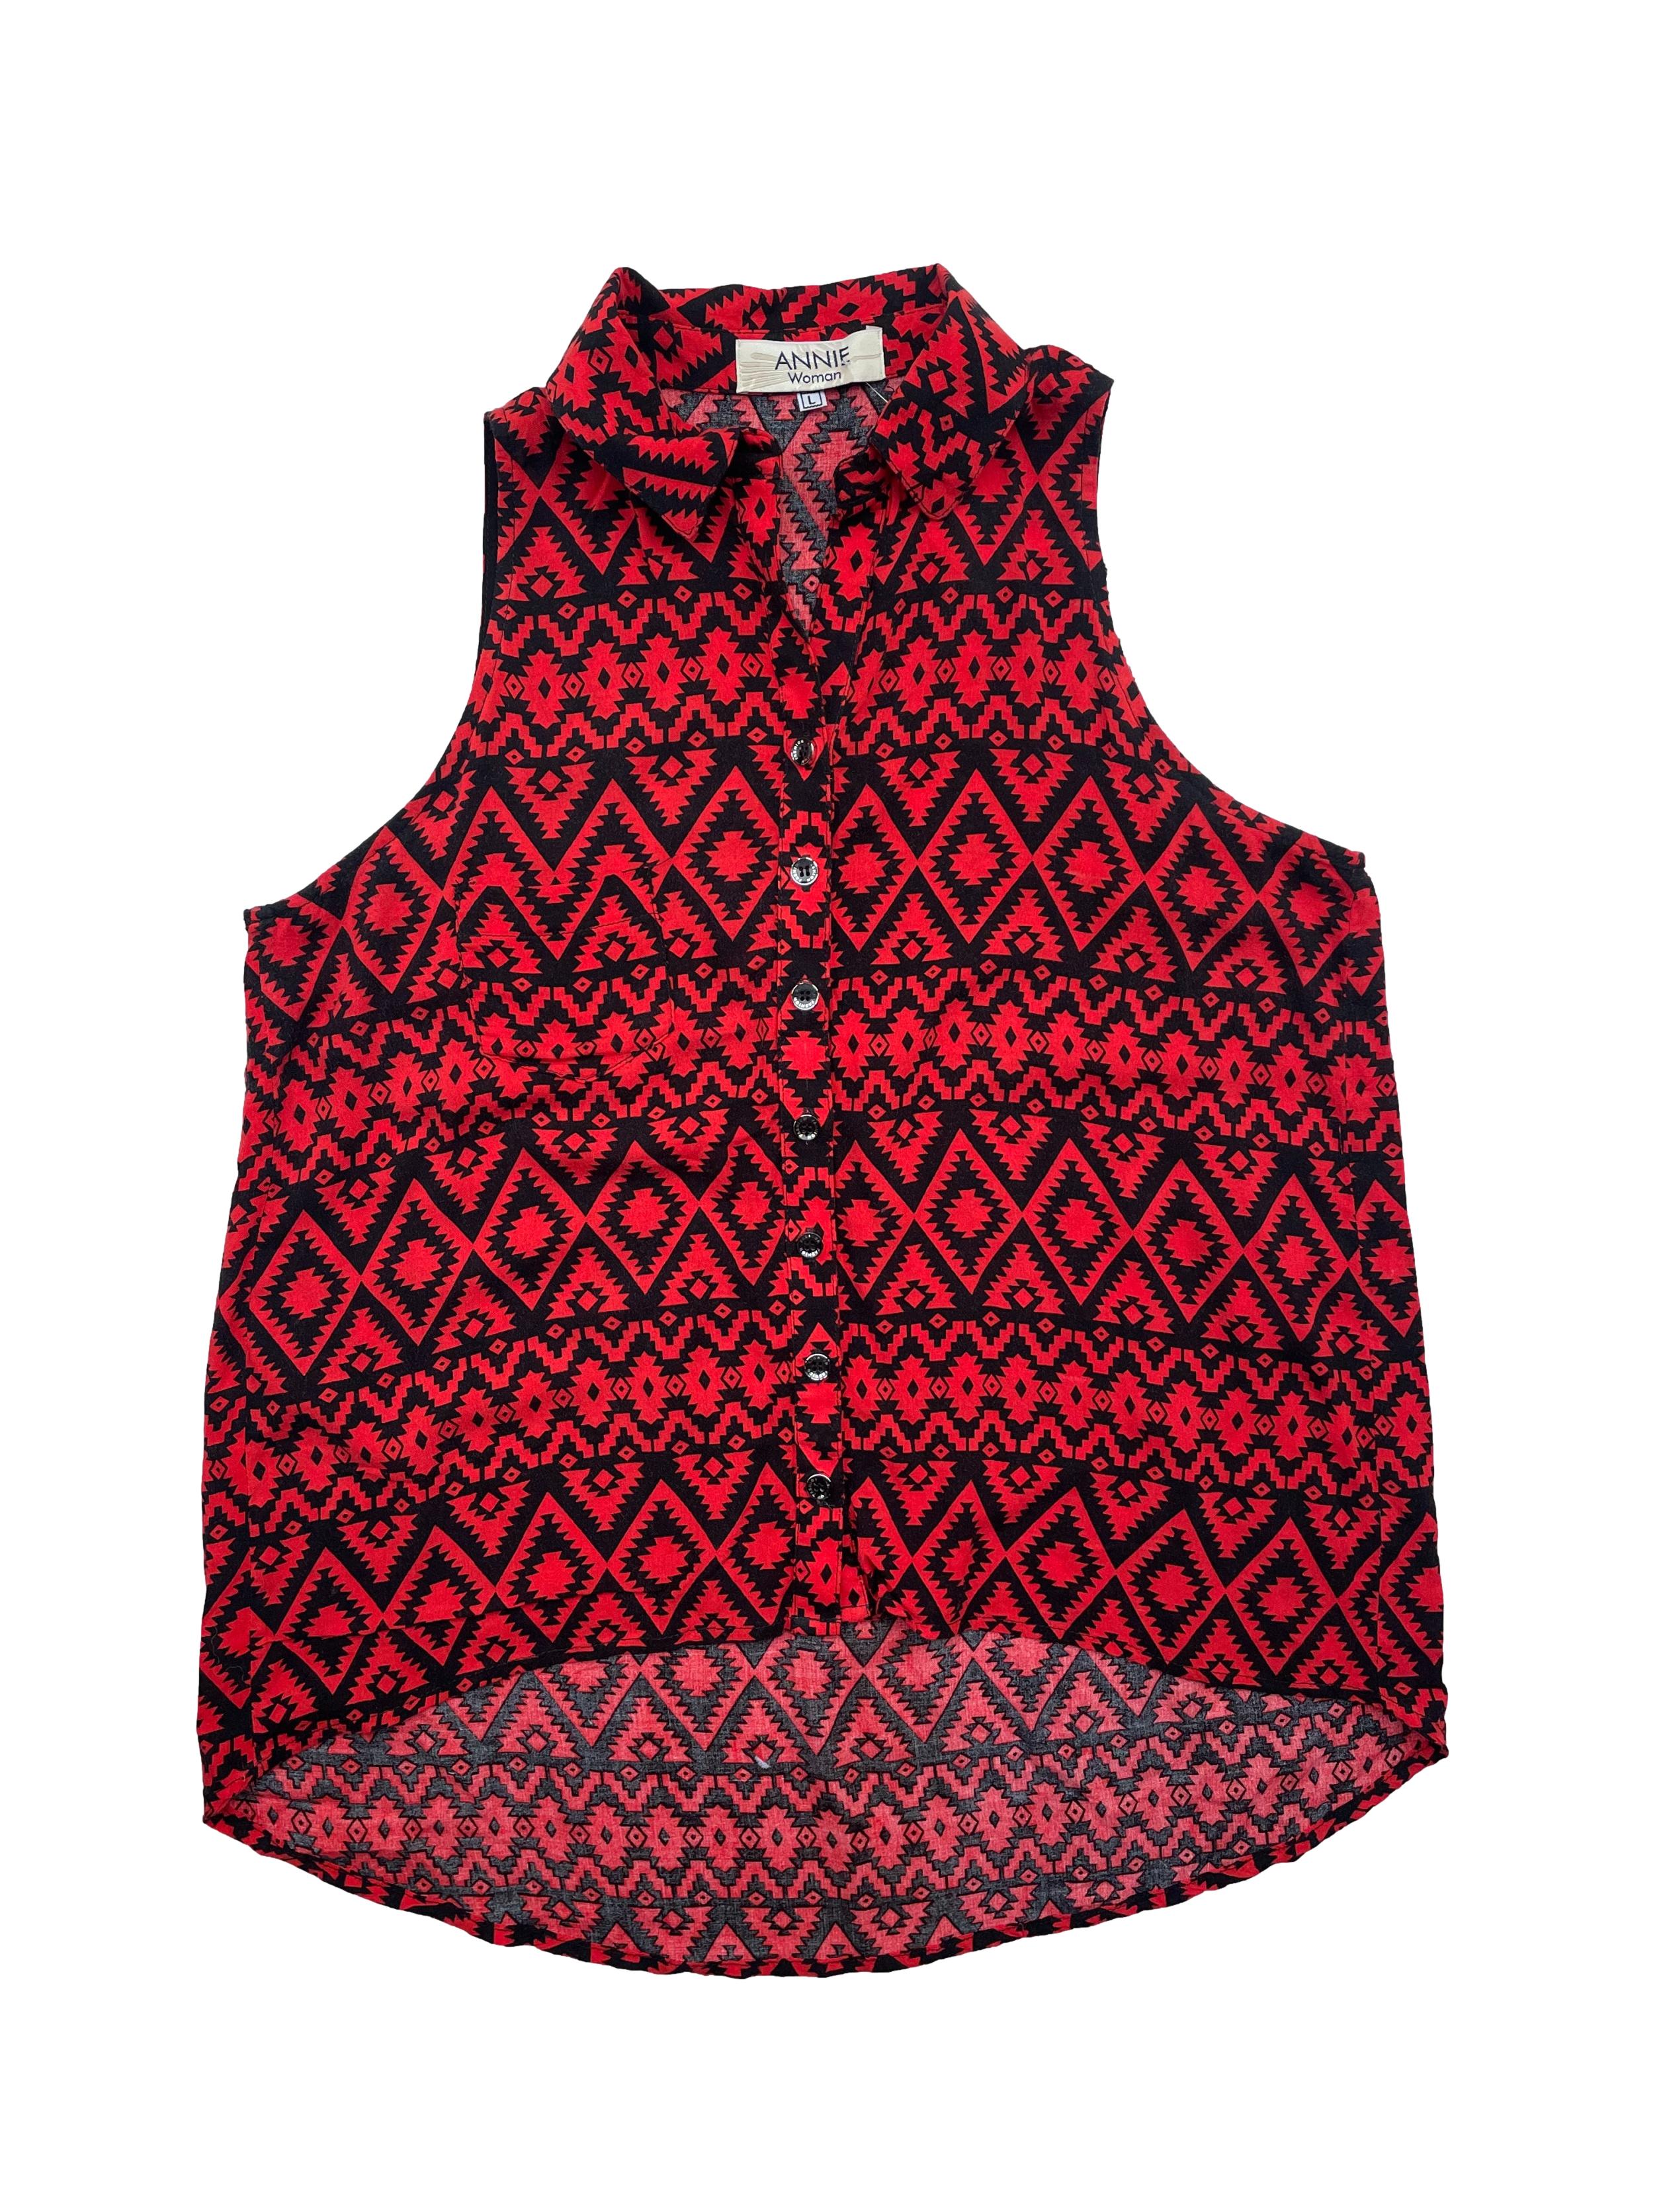 Blusa Annie Woman color rojo con estampado tribal en negro, tela tipo chalis. Busto: 96cm, Largo: 65cm